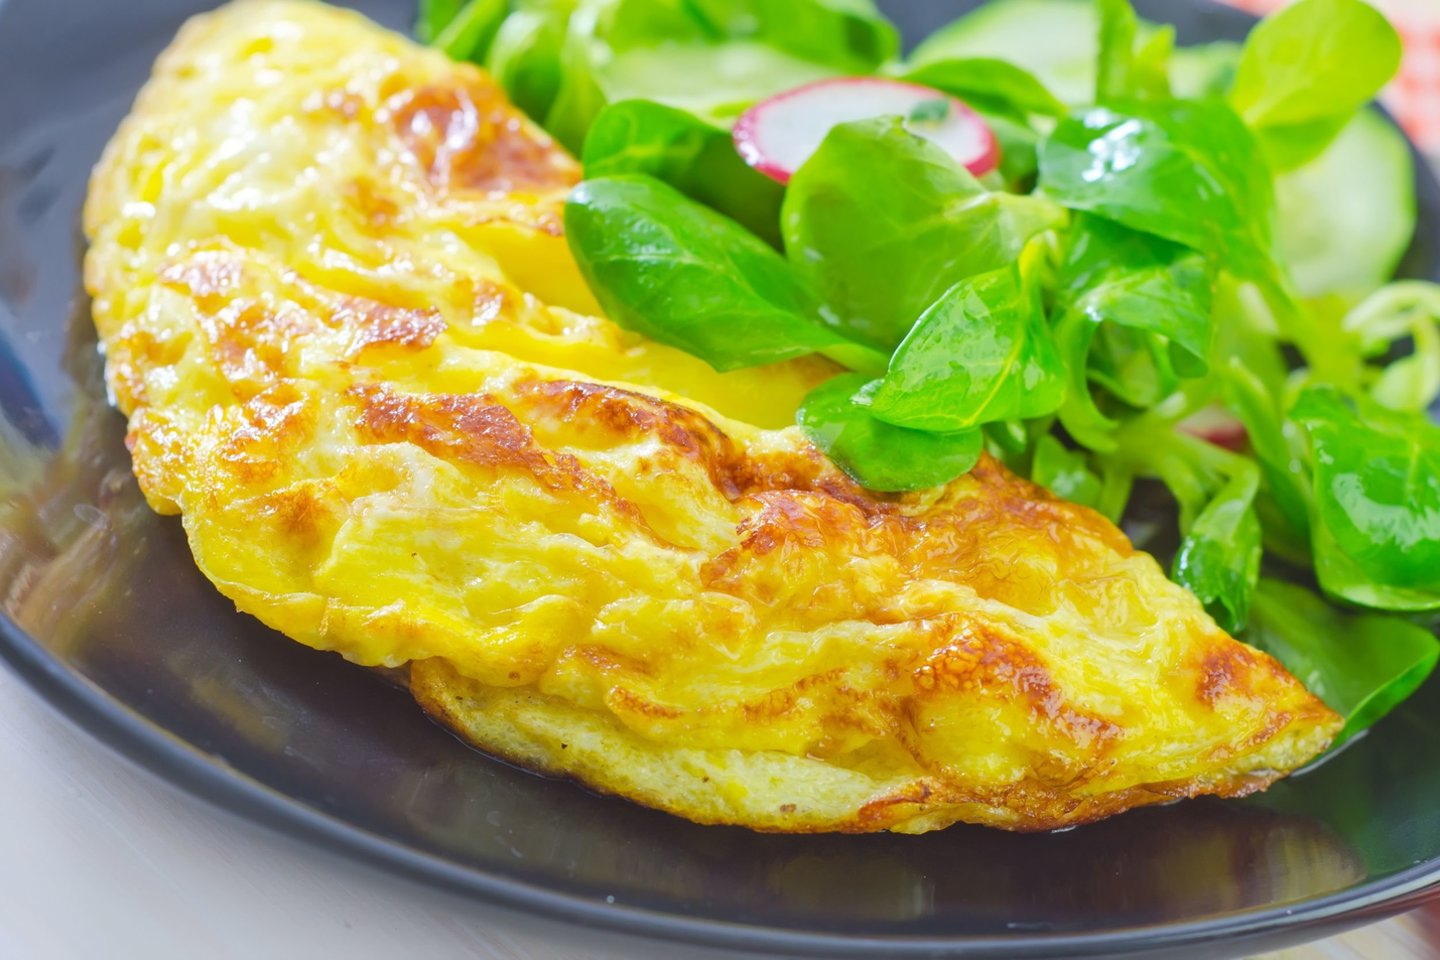  Kiaušiniai yra vienas iš universaliausių, maistingiausių ir daug baltymų turintis maisto produktas.<br> 123rf nuotr.